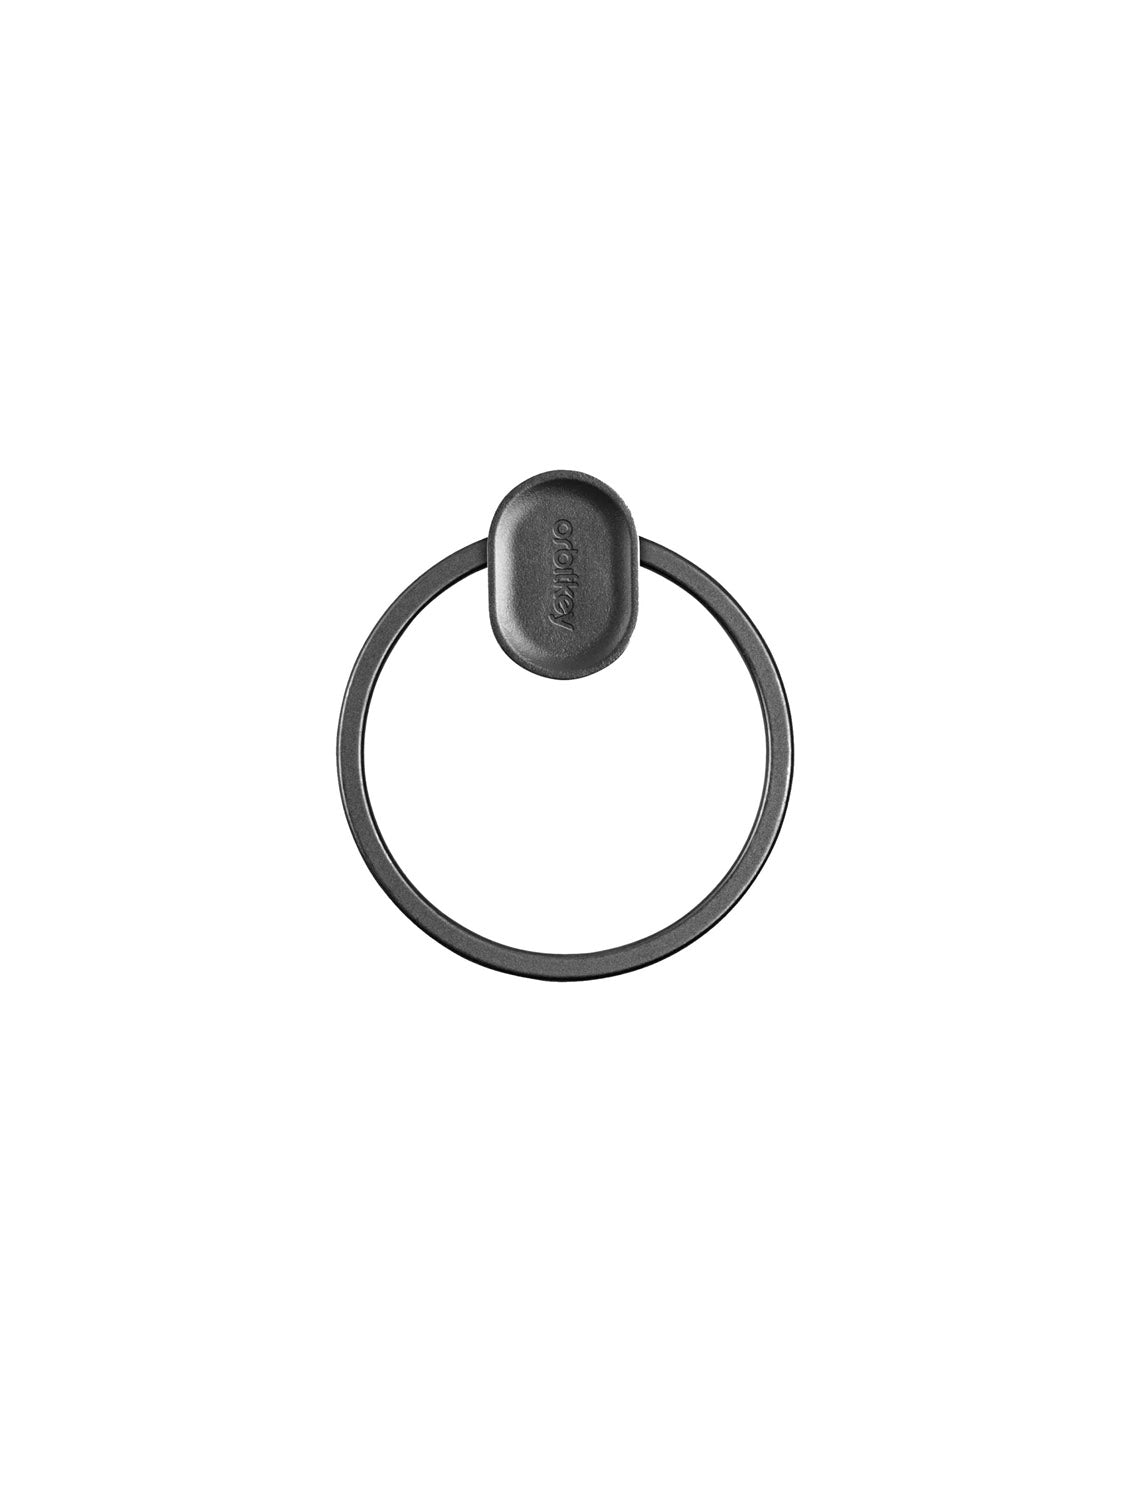 Orbitkey - Ring V2 Black